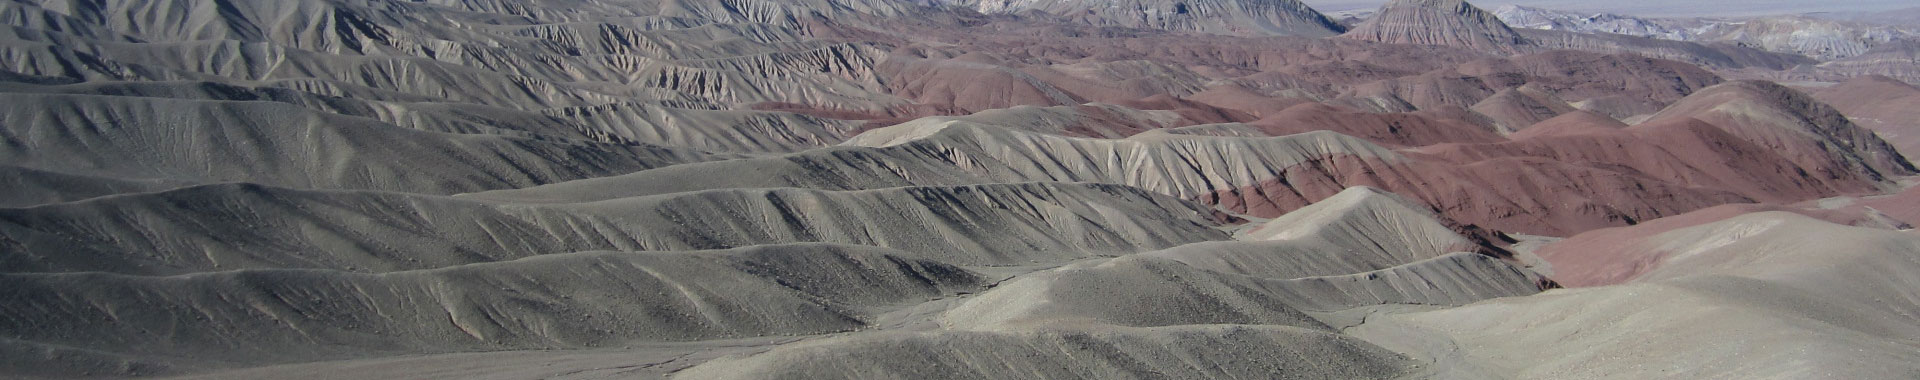 Cerro Quimal